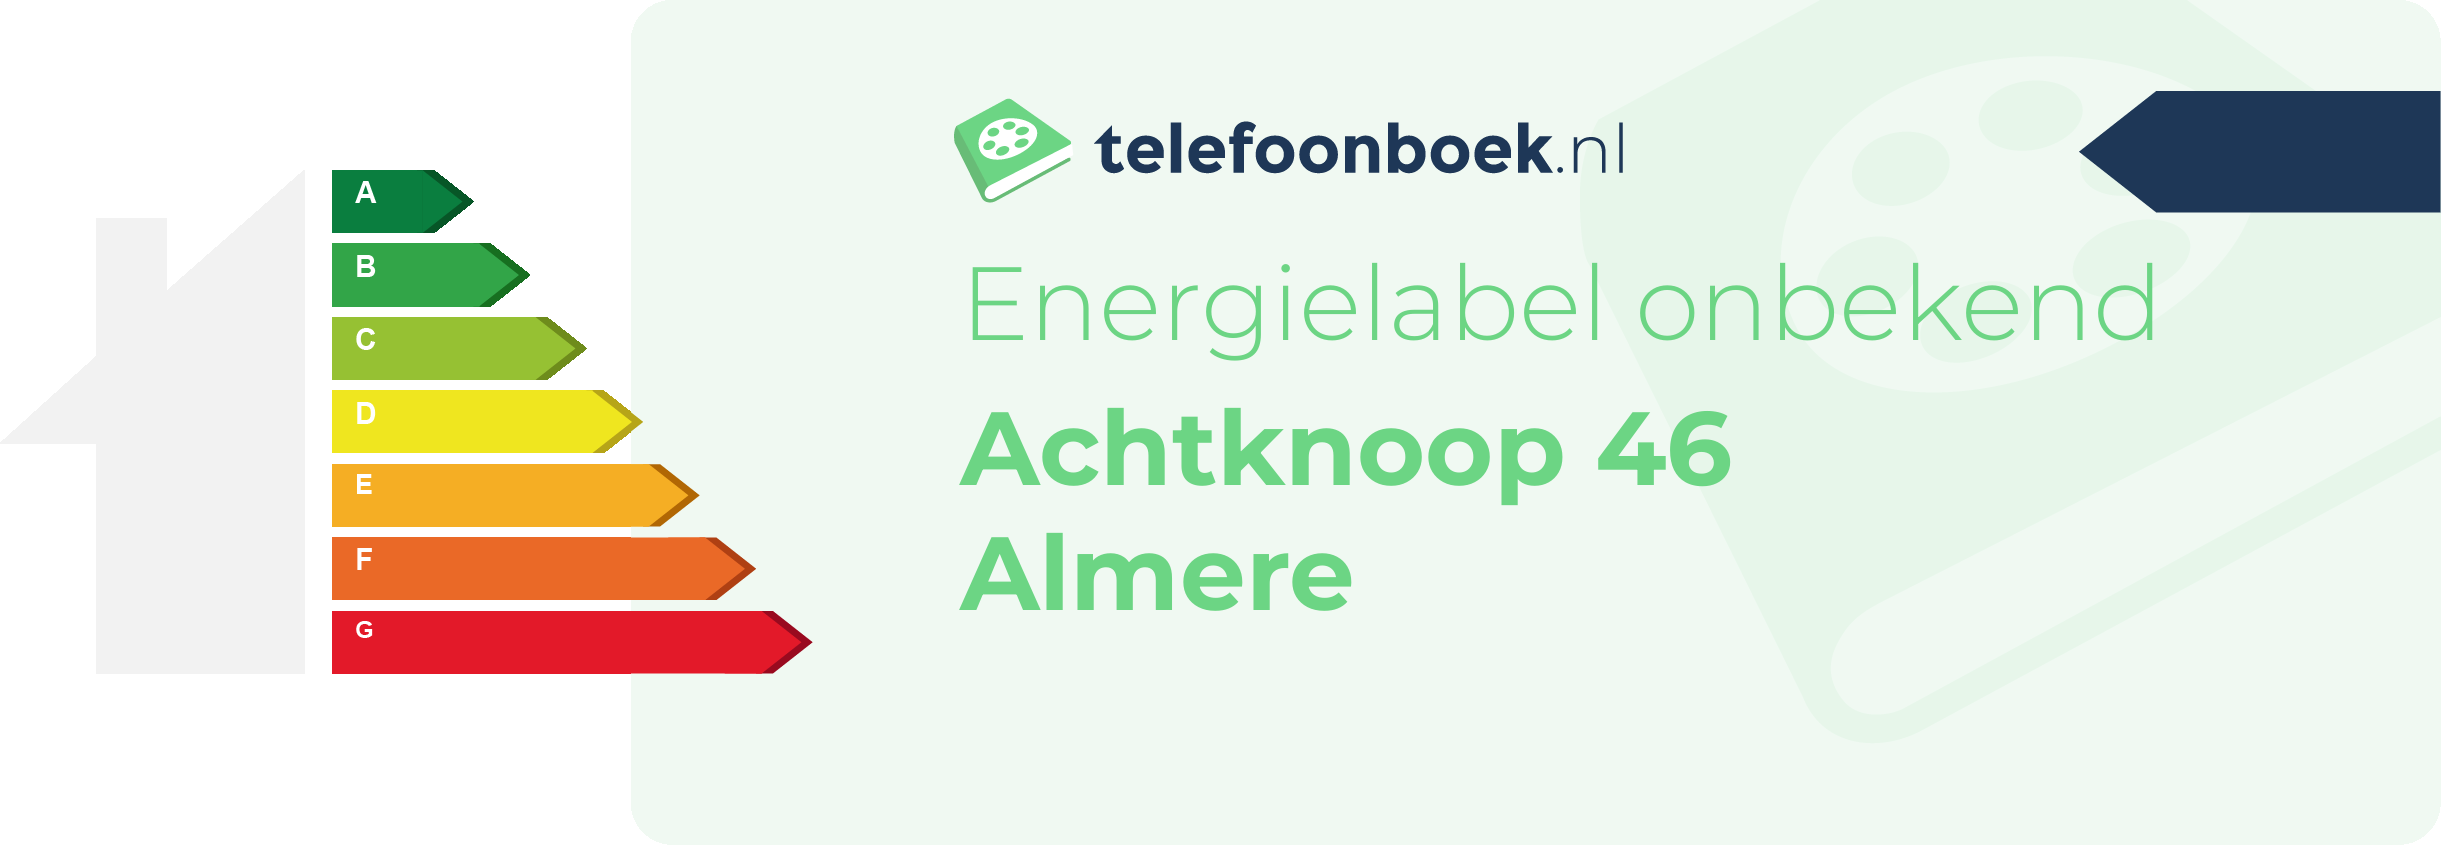 Energielabel Achtknoop 46 Almere